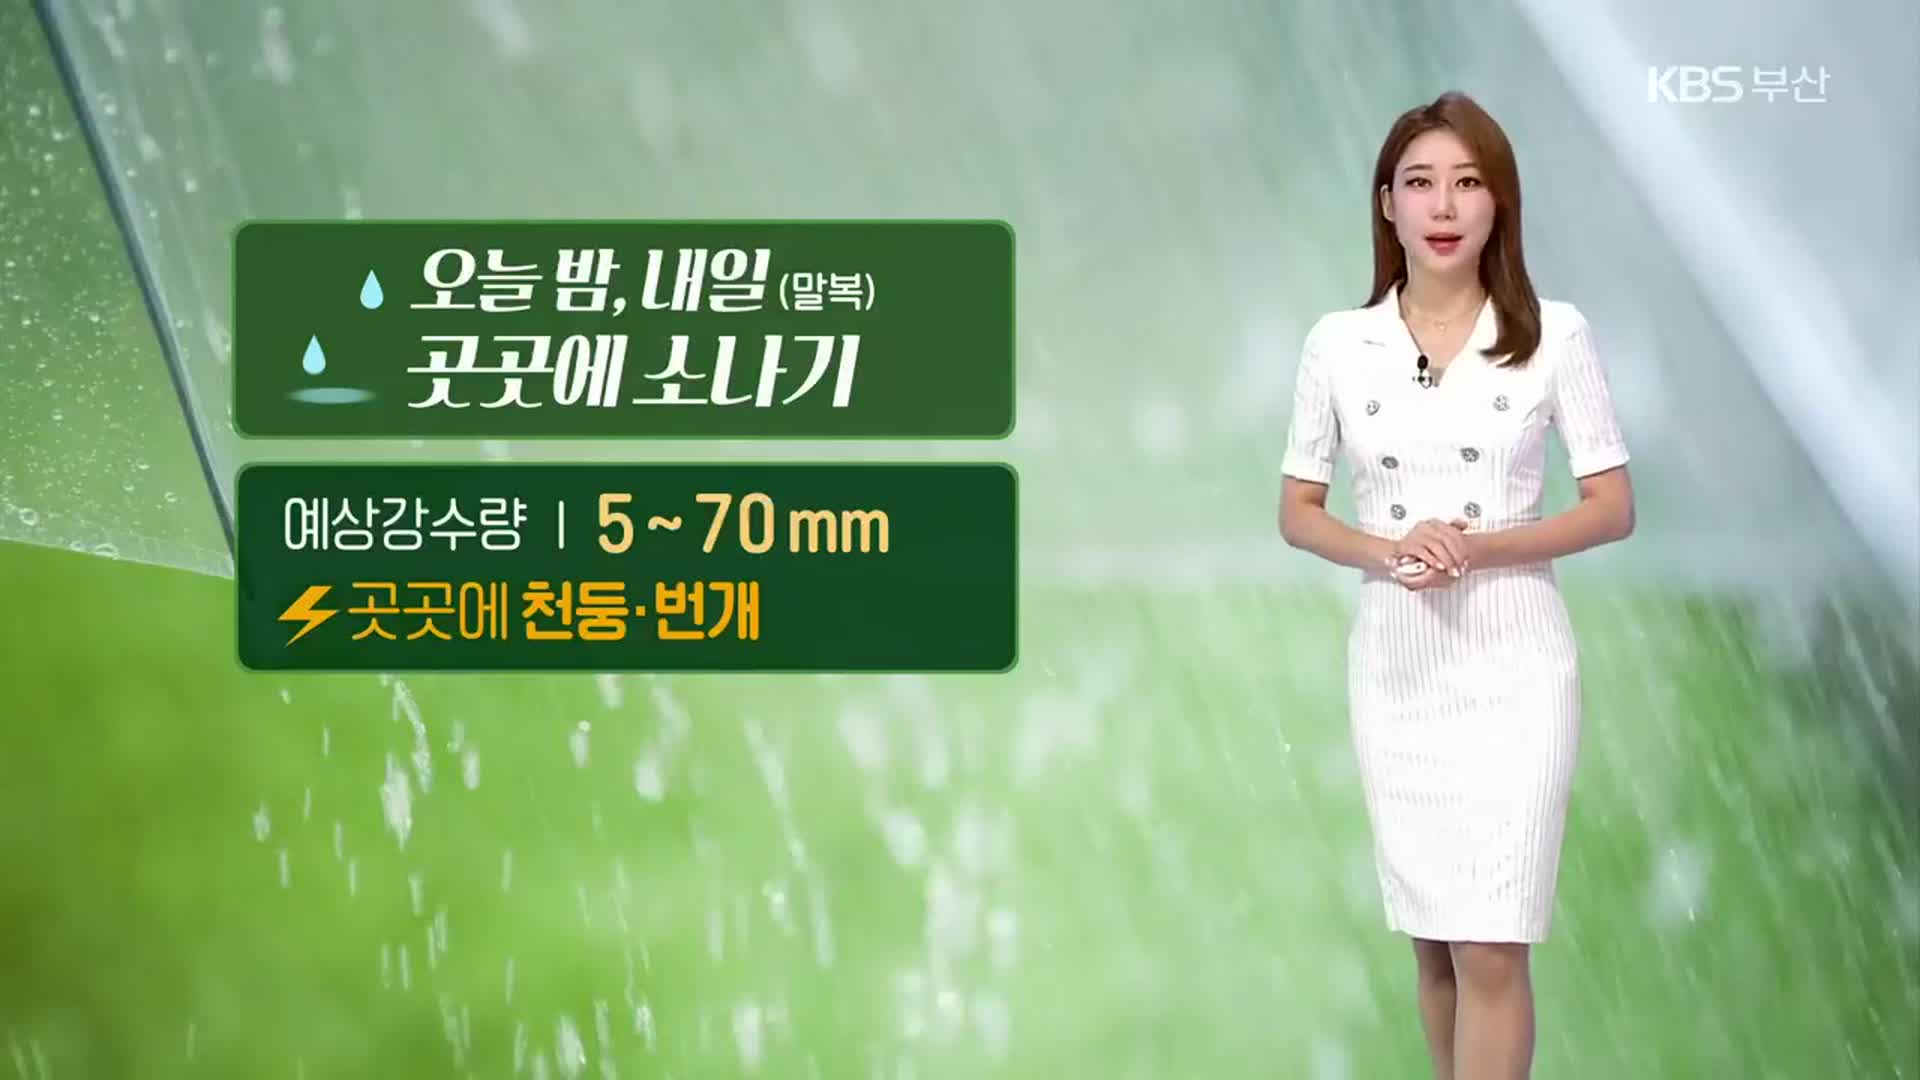 [날씨] 부산 내일까지 곳곳 소나기…경남 폭염특보 점차 완화